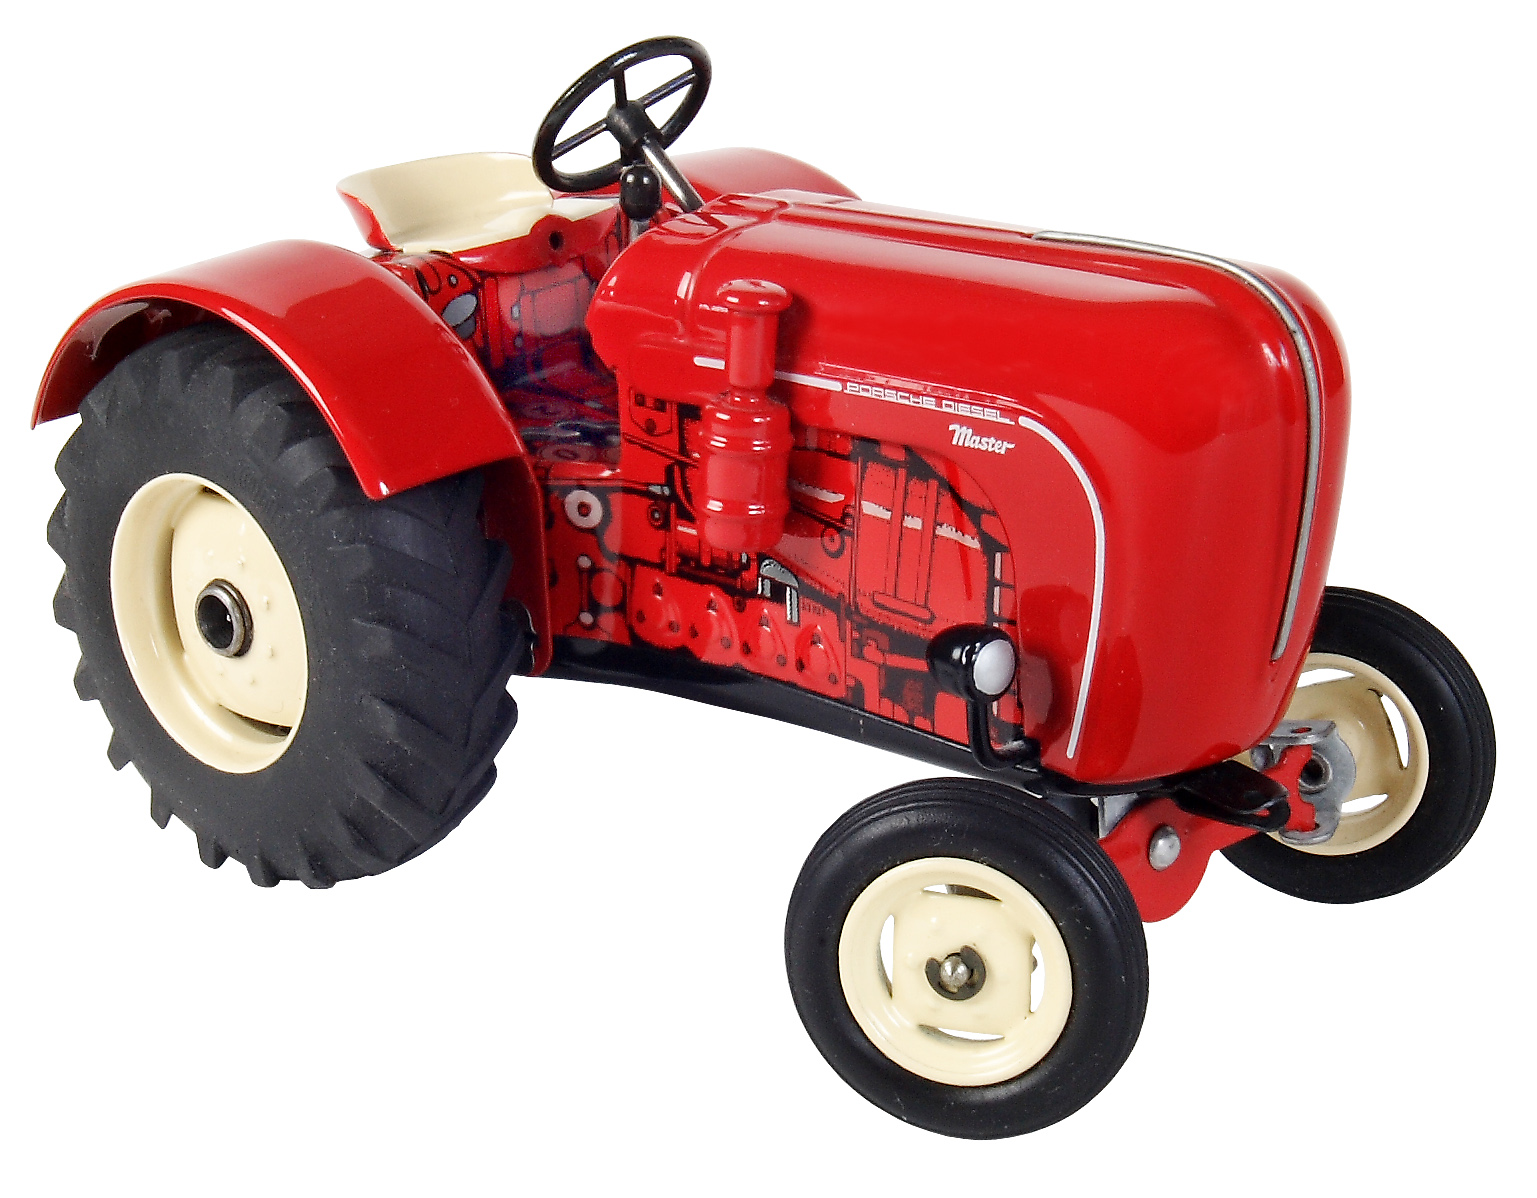 Traktor Zubehör Kartoffelschleuder von KOVAP - Blechspielzeug